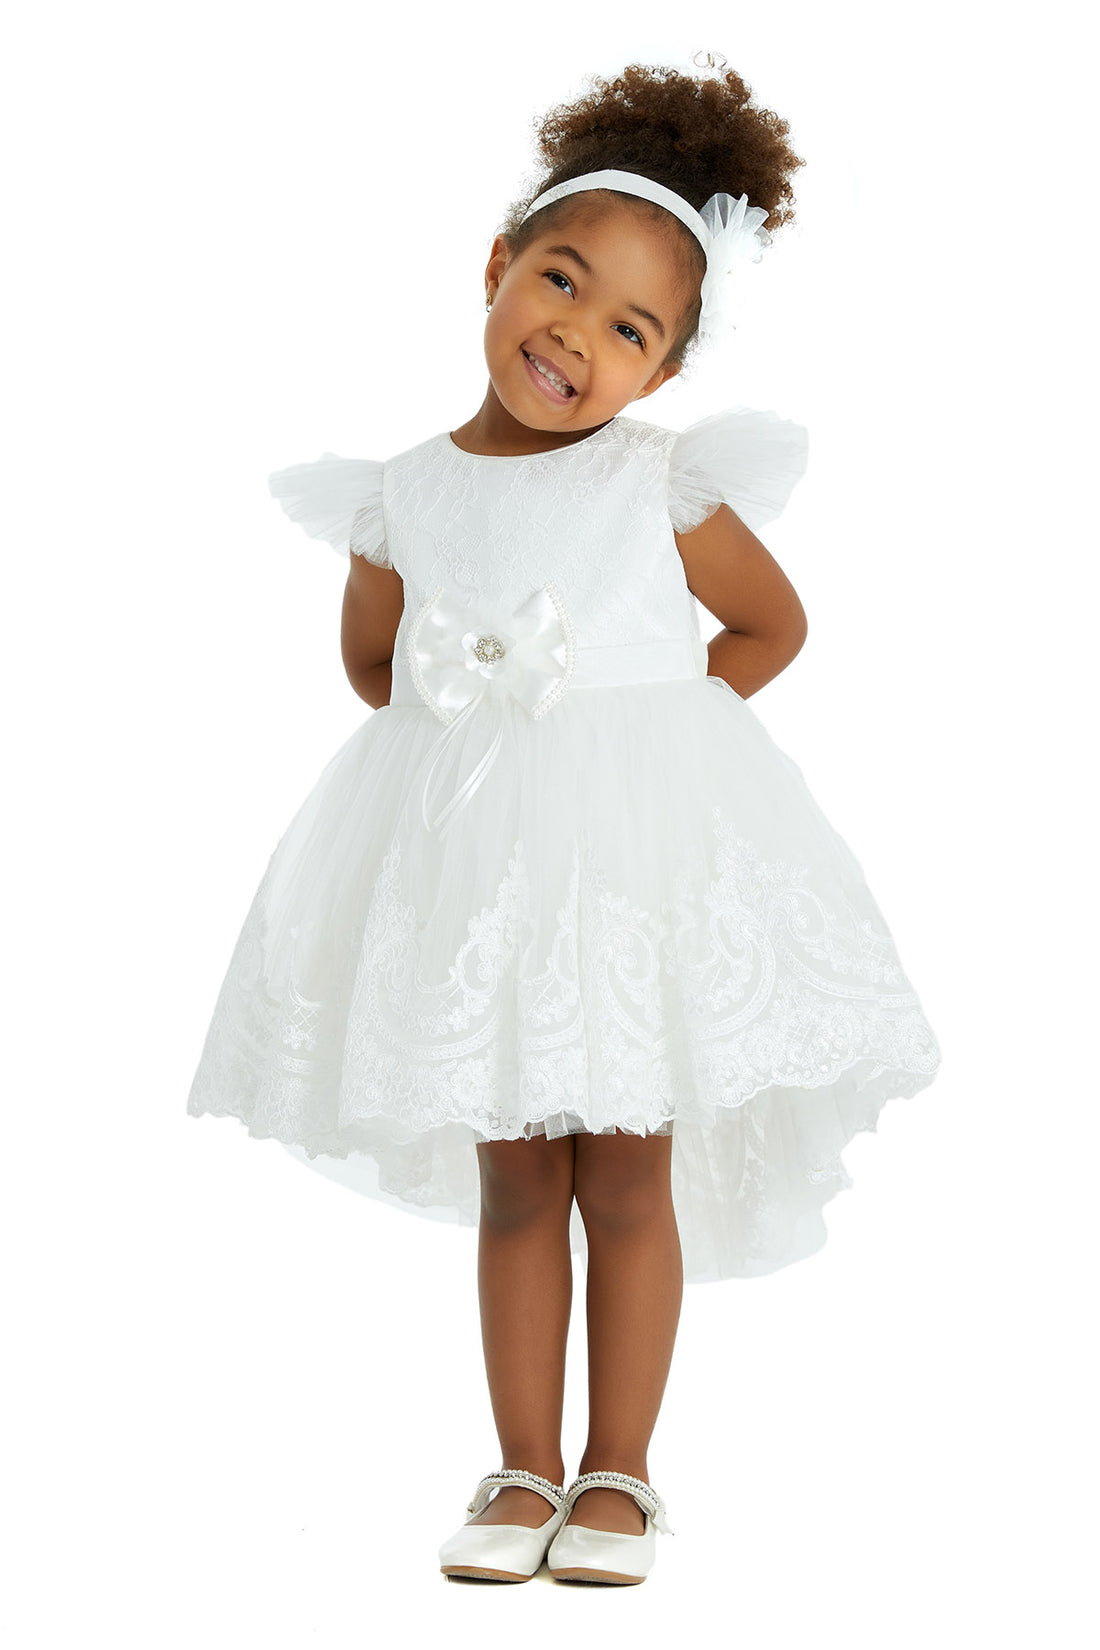 Lovely White Baby Dress